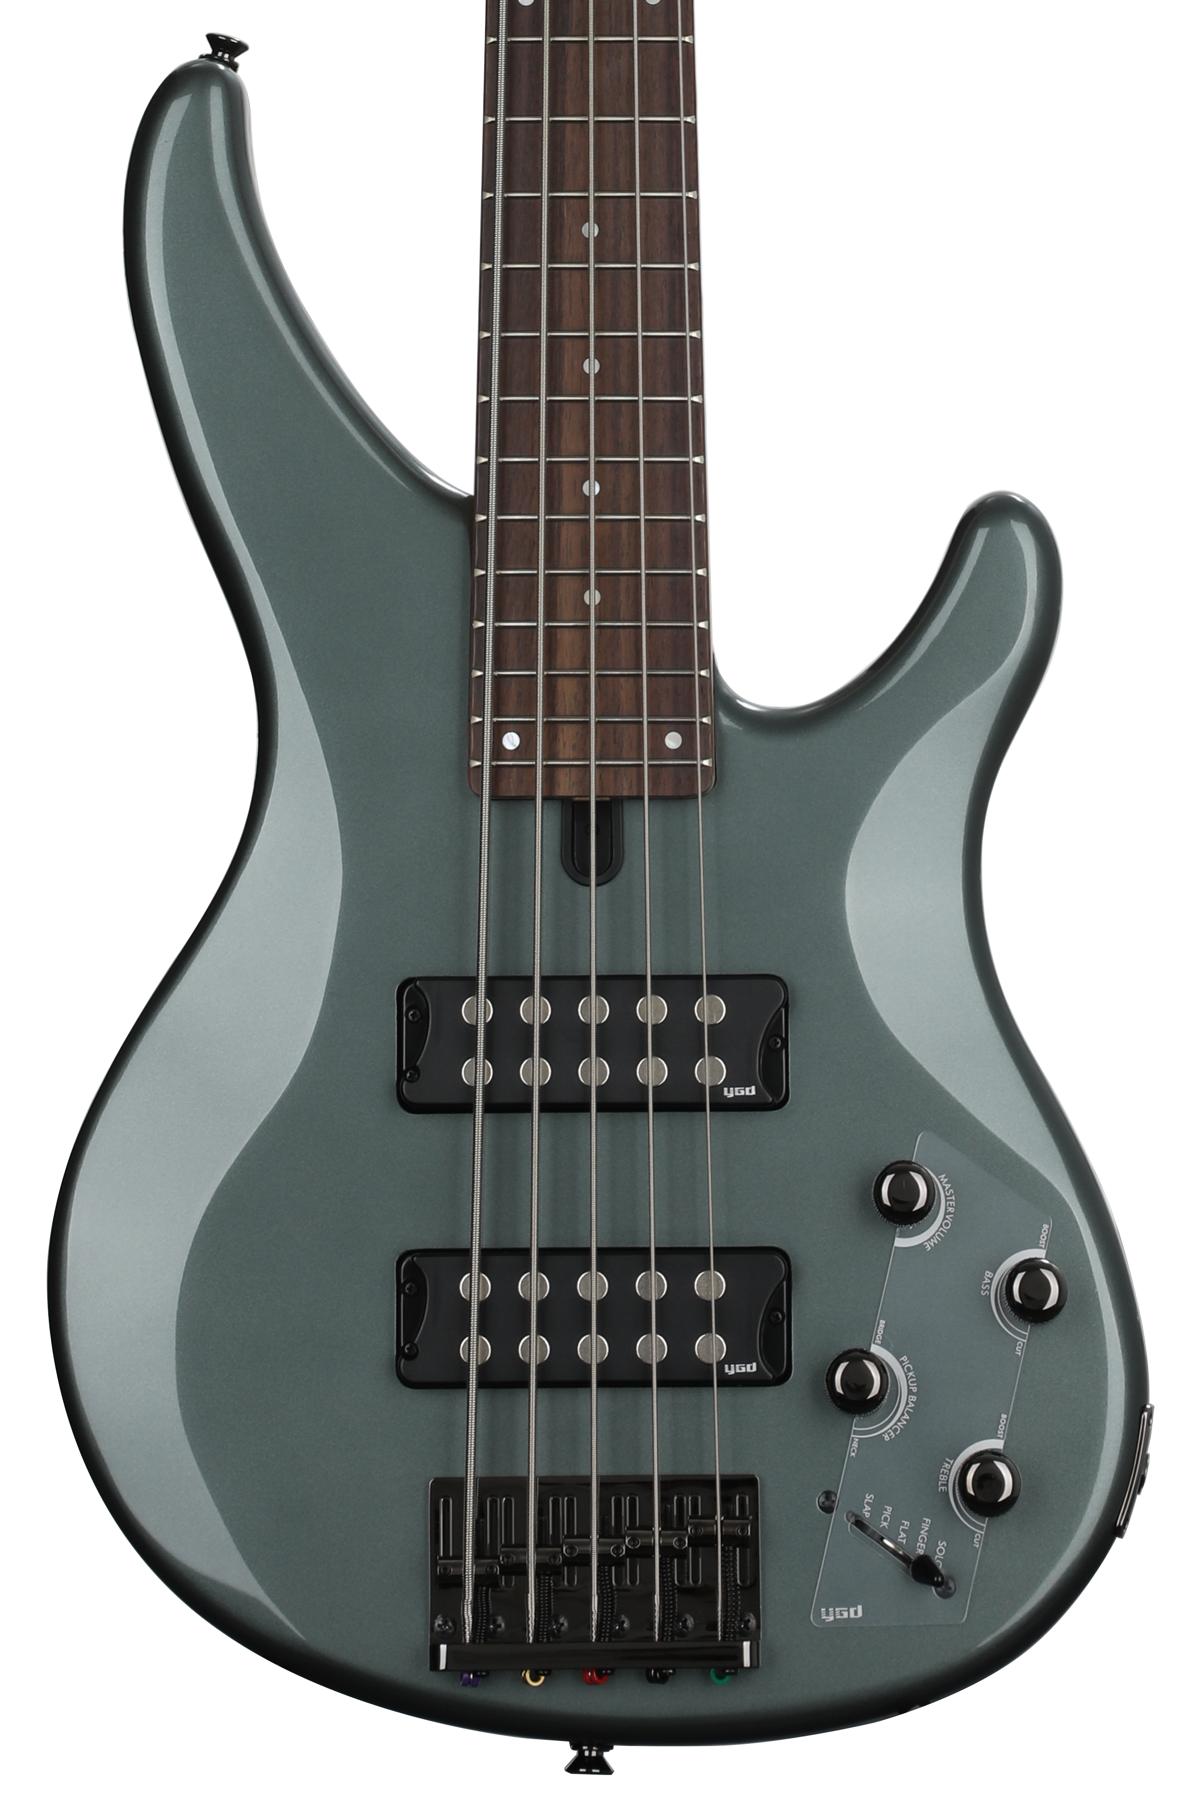 Yamaha TRBX305 5-string Bass Guitar - Mist Green | Sweetwater